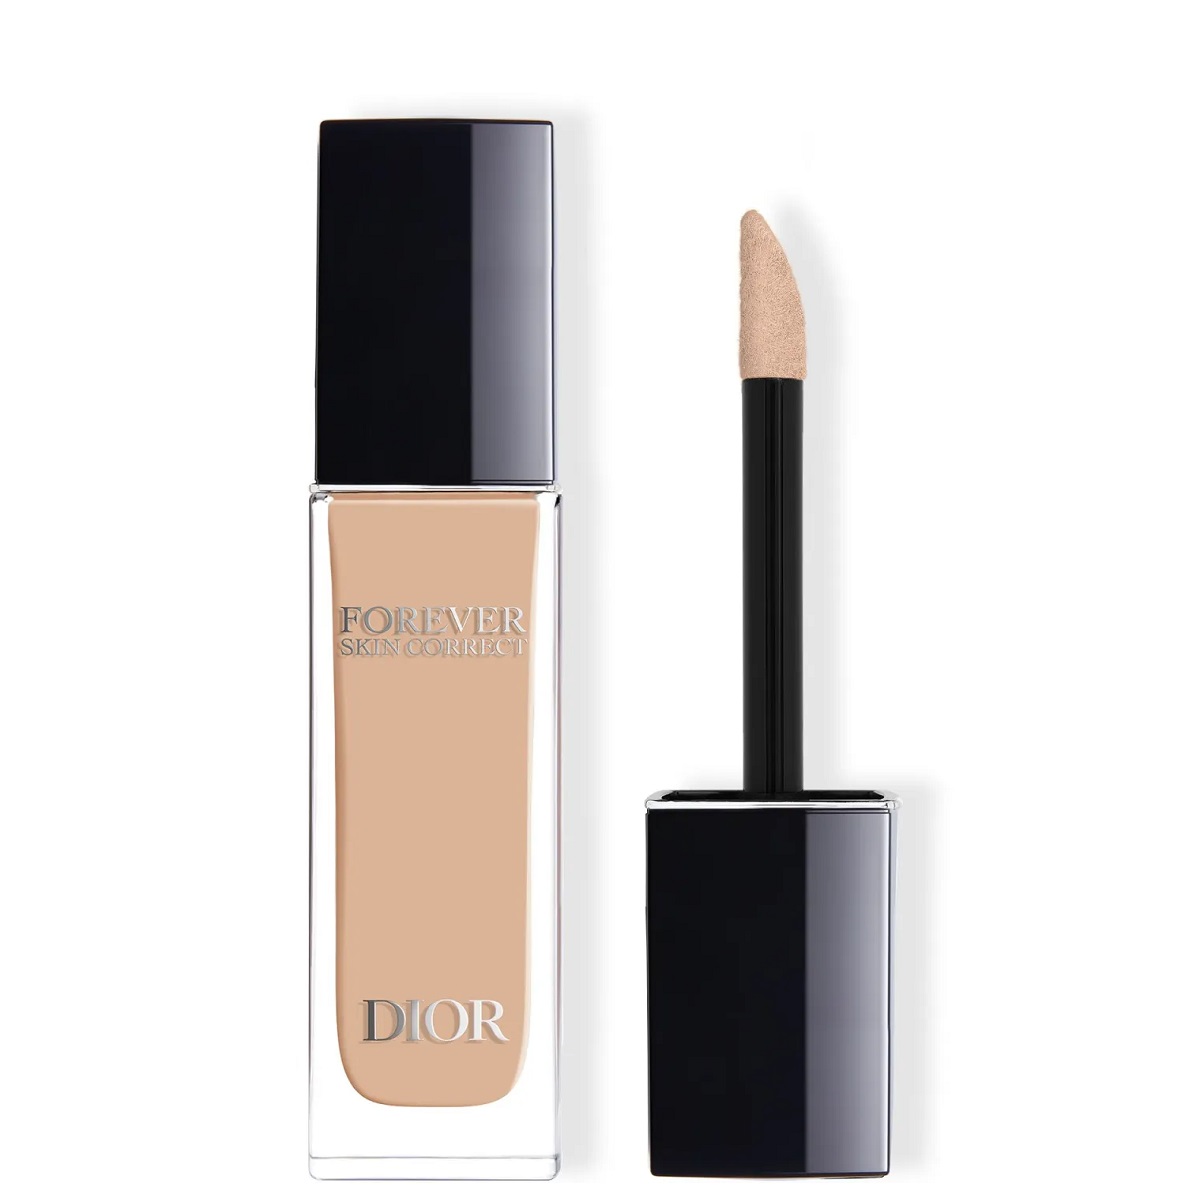 Dior Tekutý korektor Forever Skin Correct (Full-Coverage Concealer) 11 ml 1 N Neutral